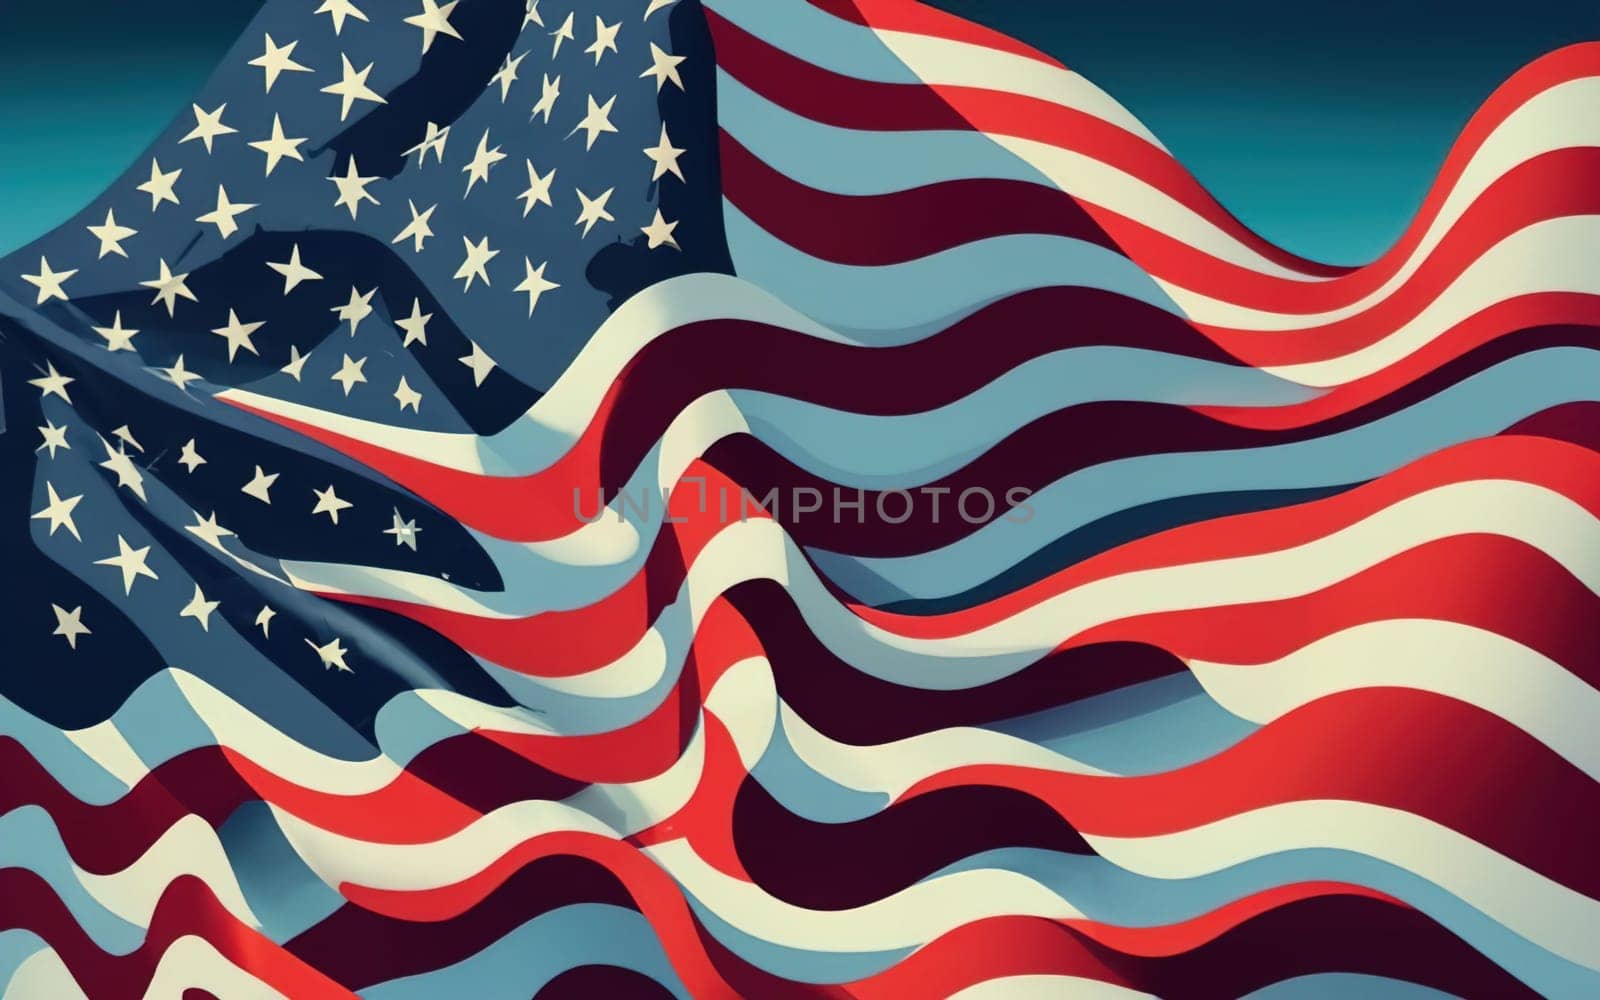 Dark Blue-Toned USA Flag Background - Patriotic American Flag Illustration download image